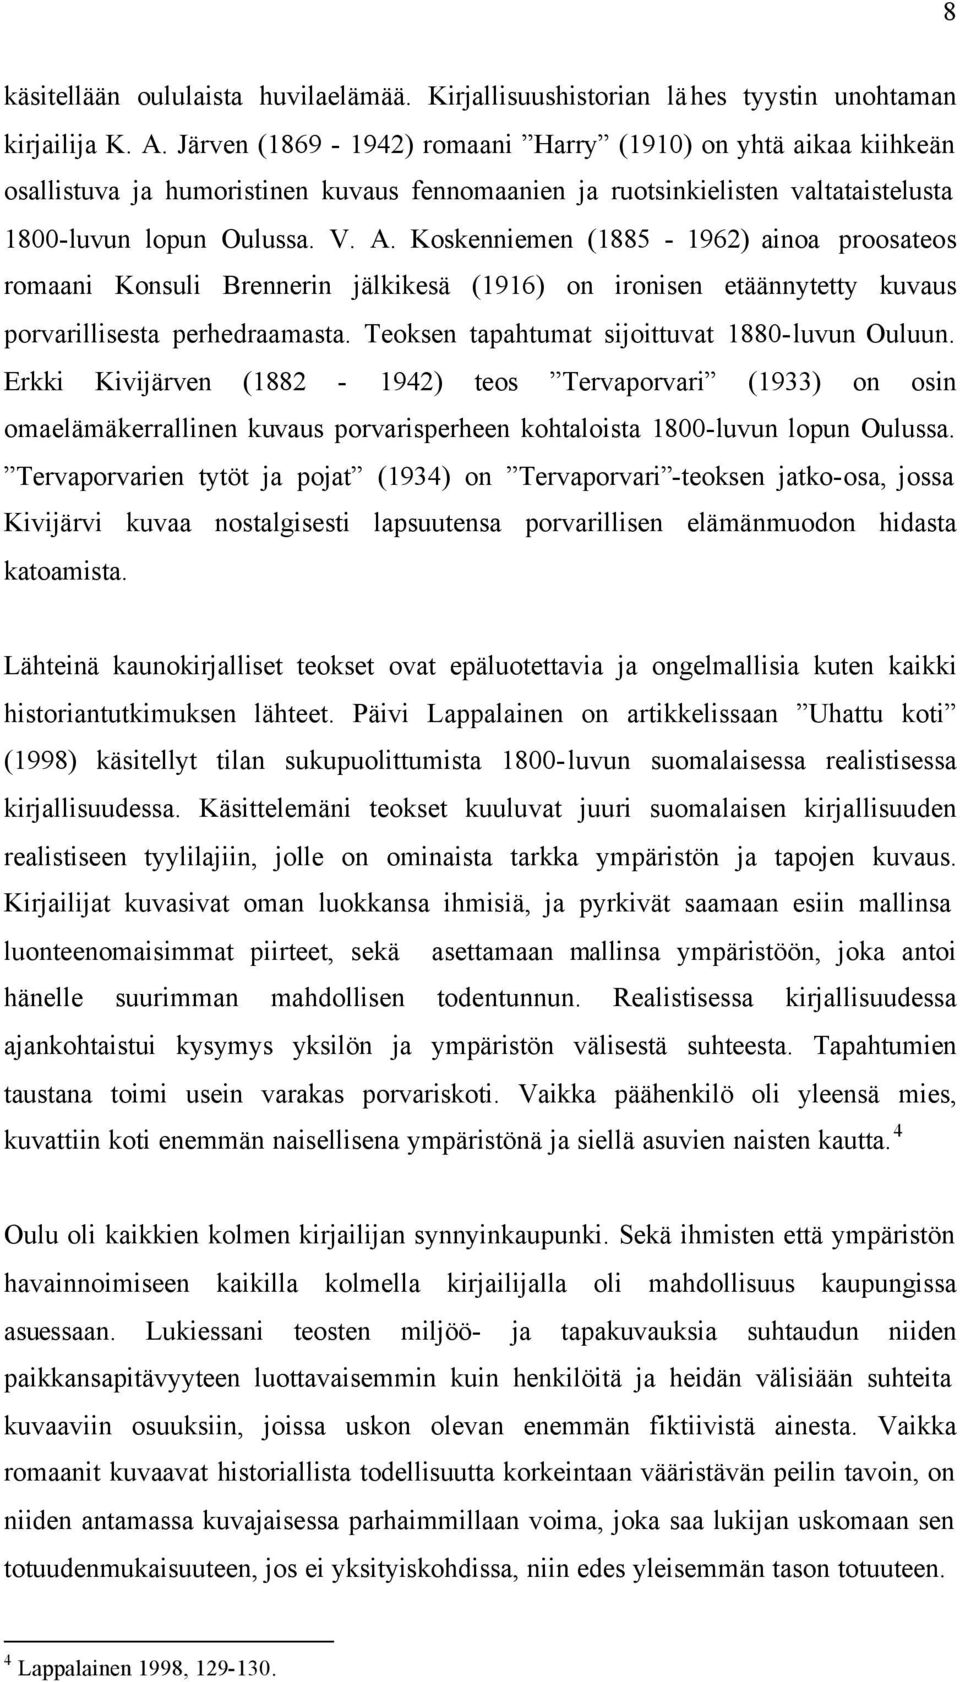 Koskenniemen (1885-1962) ainoa proosateos romaani Konsuli Brennerin jälkikesä (1916) on ironisen etäännytetty kuvaus porvarillisesta perhedraamasta. Teoksen tapahtumat sijoittuvat 1880-luvun Ouluun.